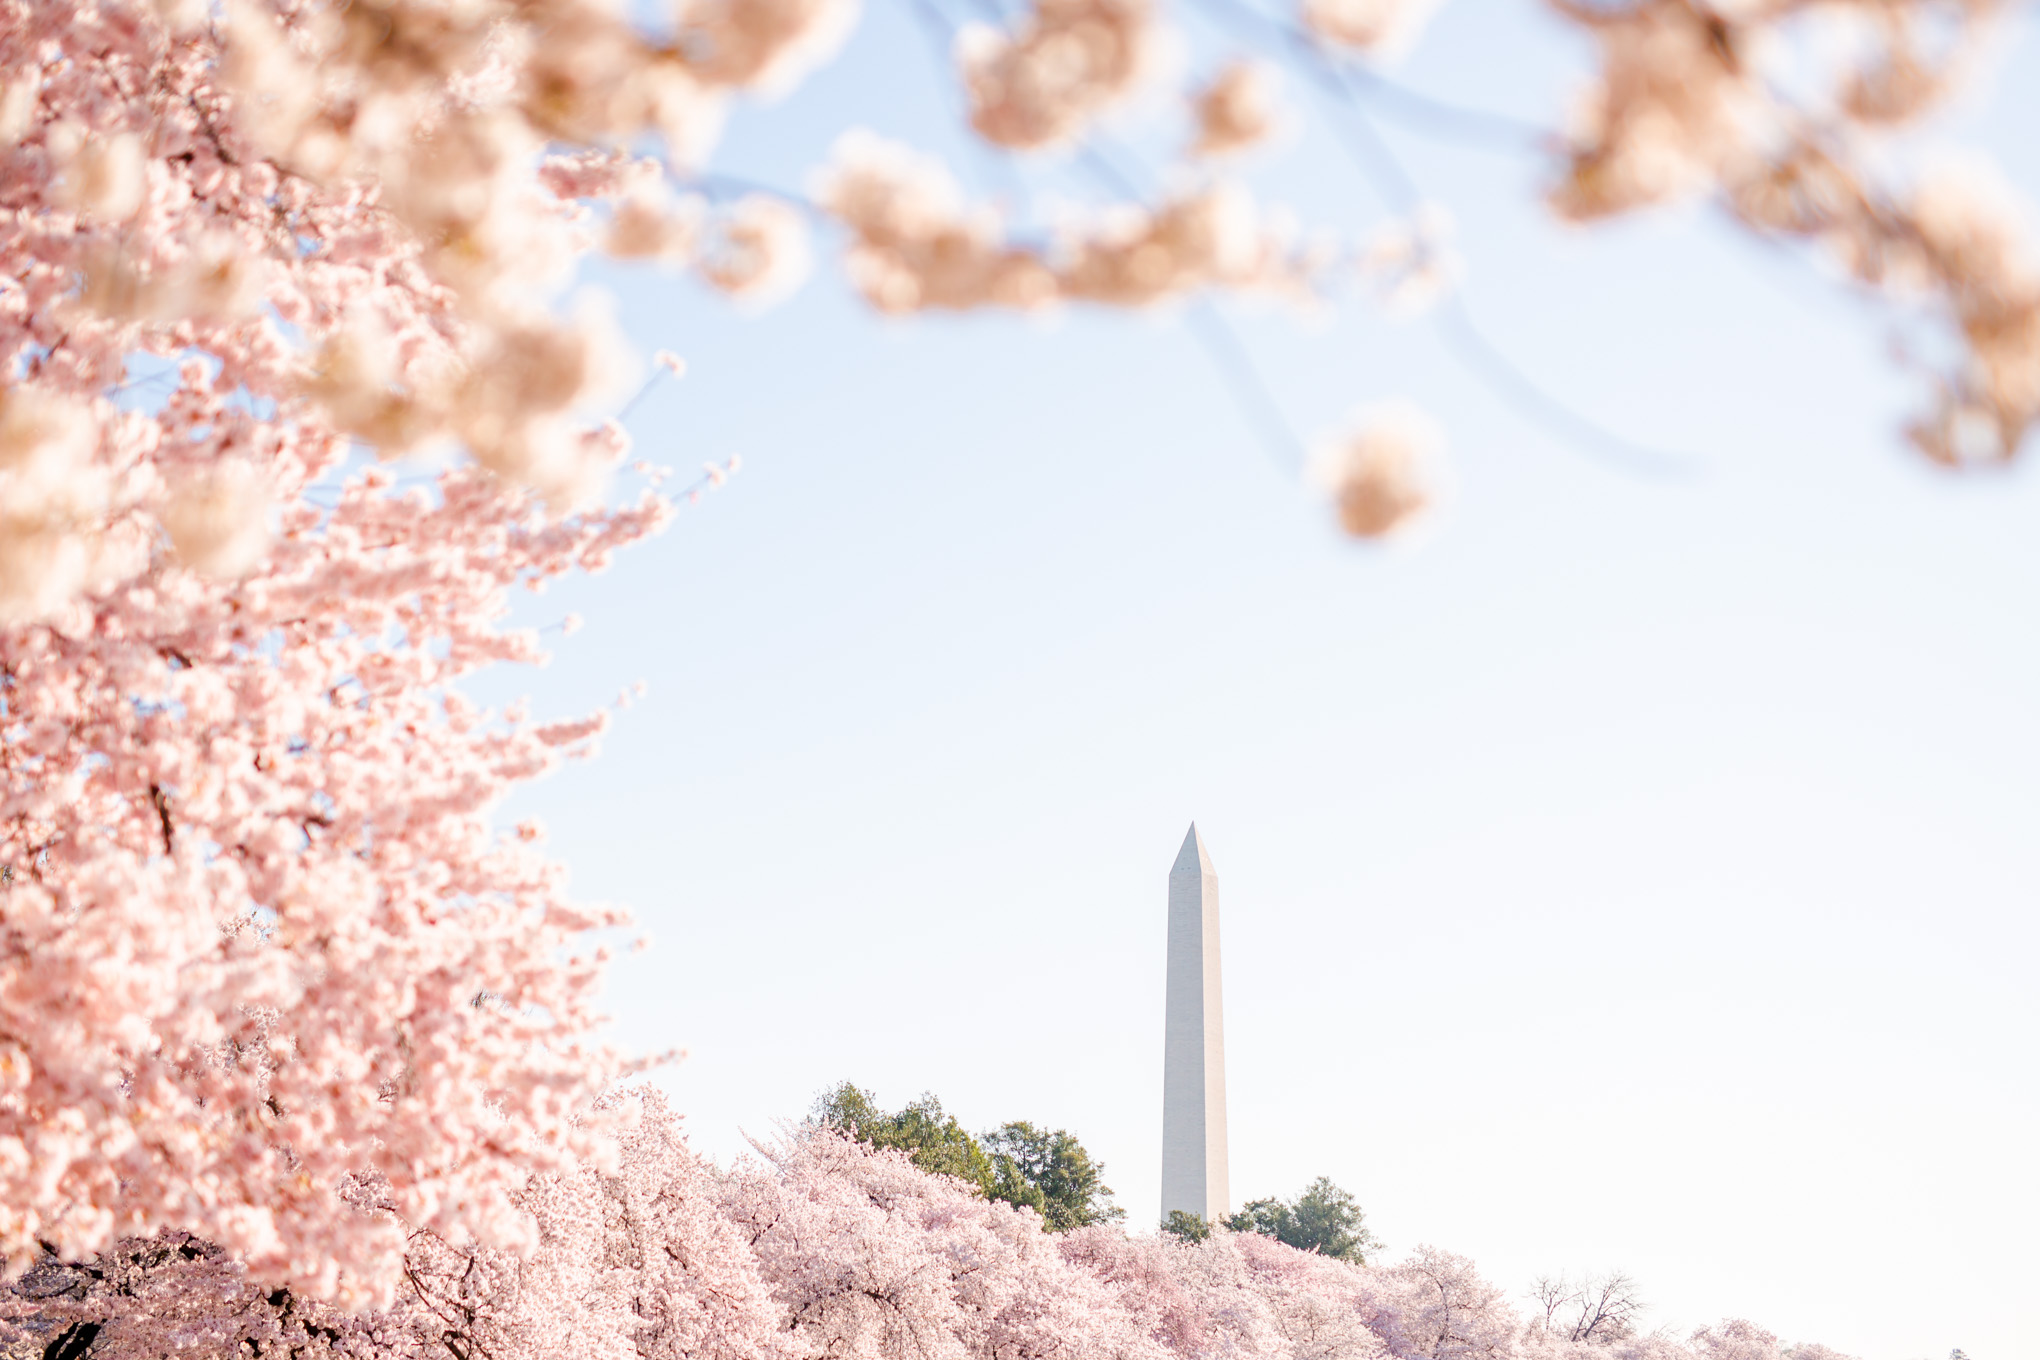 DC cherry blossoms photos, DC cherry blossoms photographer, DC photographer, cherry blossoms prints, cherry blossoms photos, Washington DC sights, Tidal Basin, DC views, DC landmarks, spring in DC